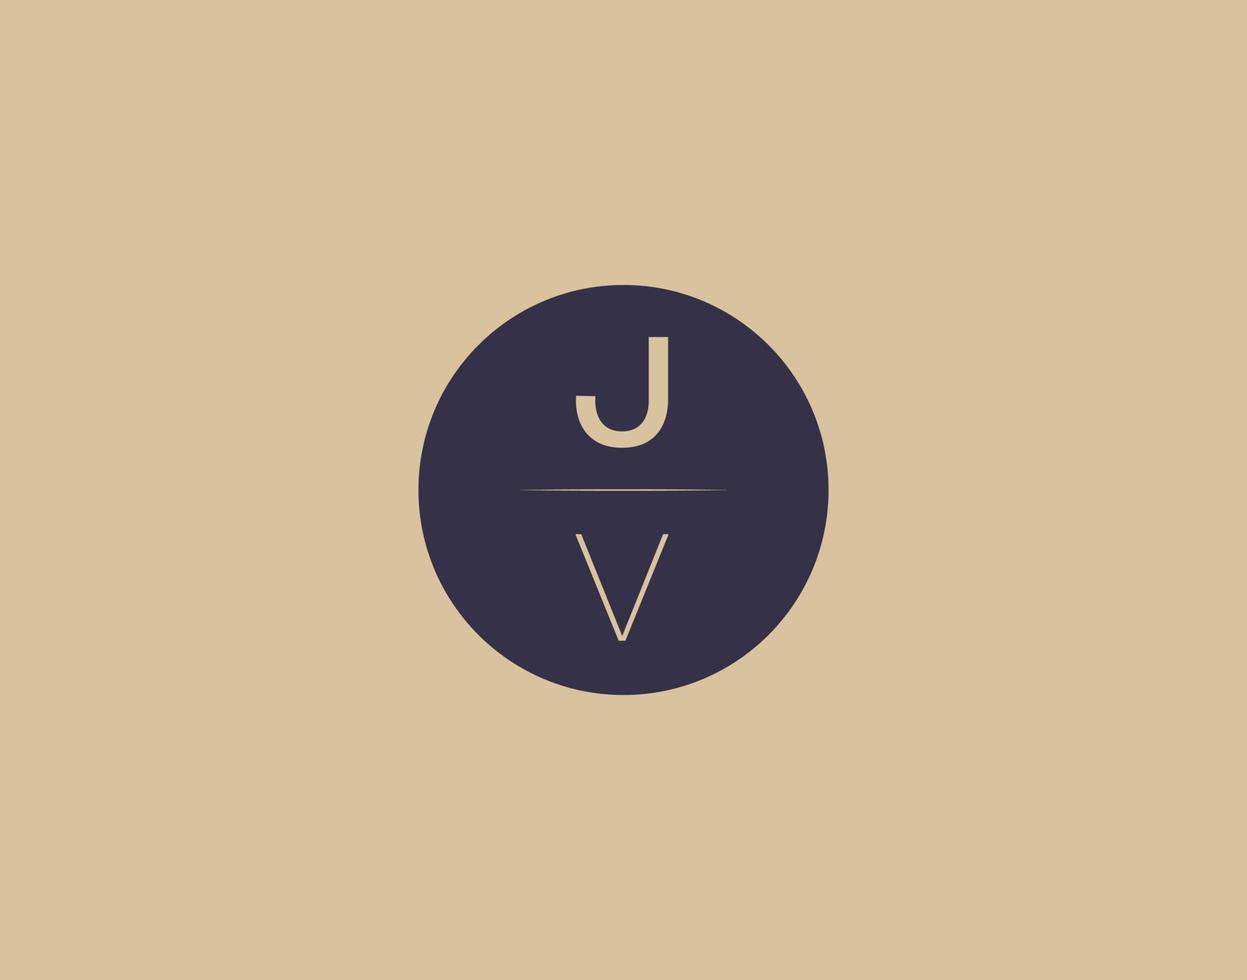 jv lettera moderno elegante logo design vettore immagini